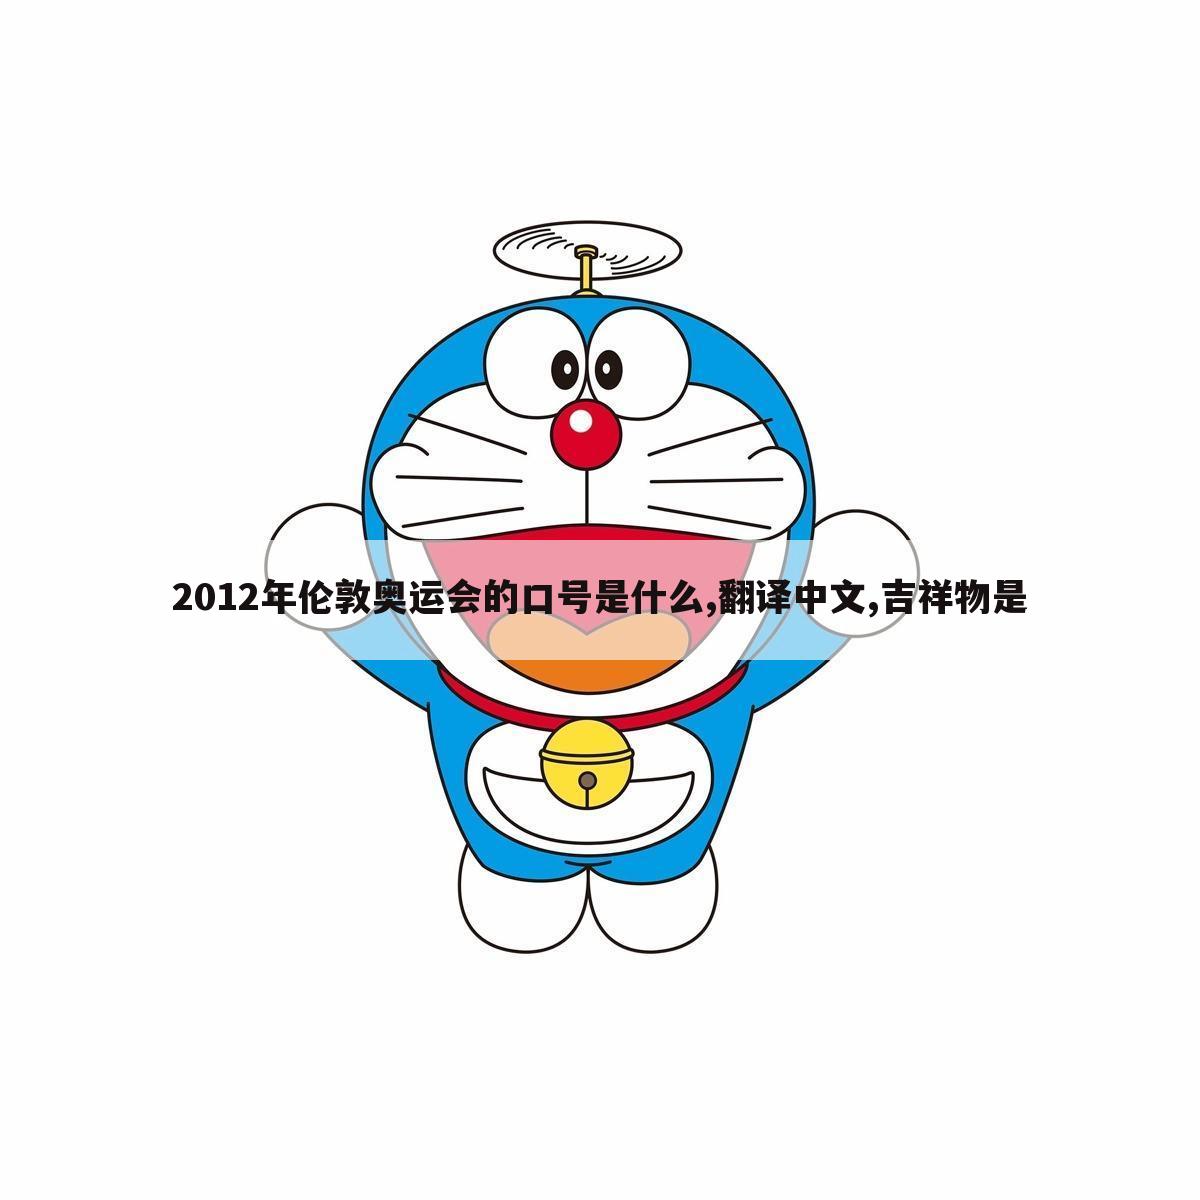 2012年伦敦奥运会的口号是什么,翻译中文,吉祥物是